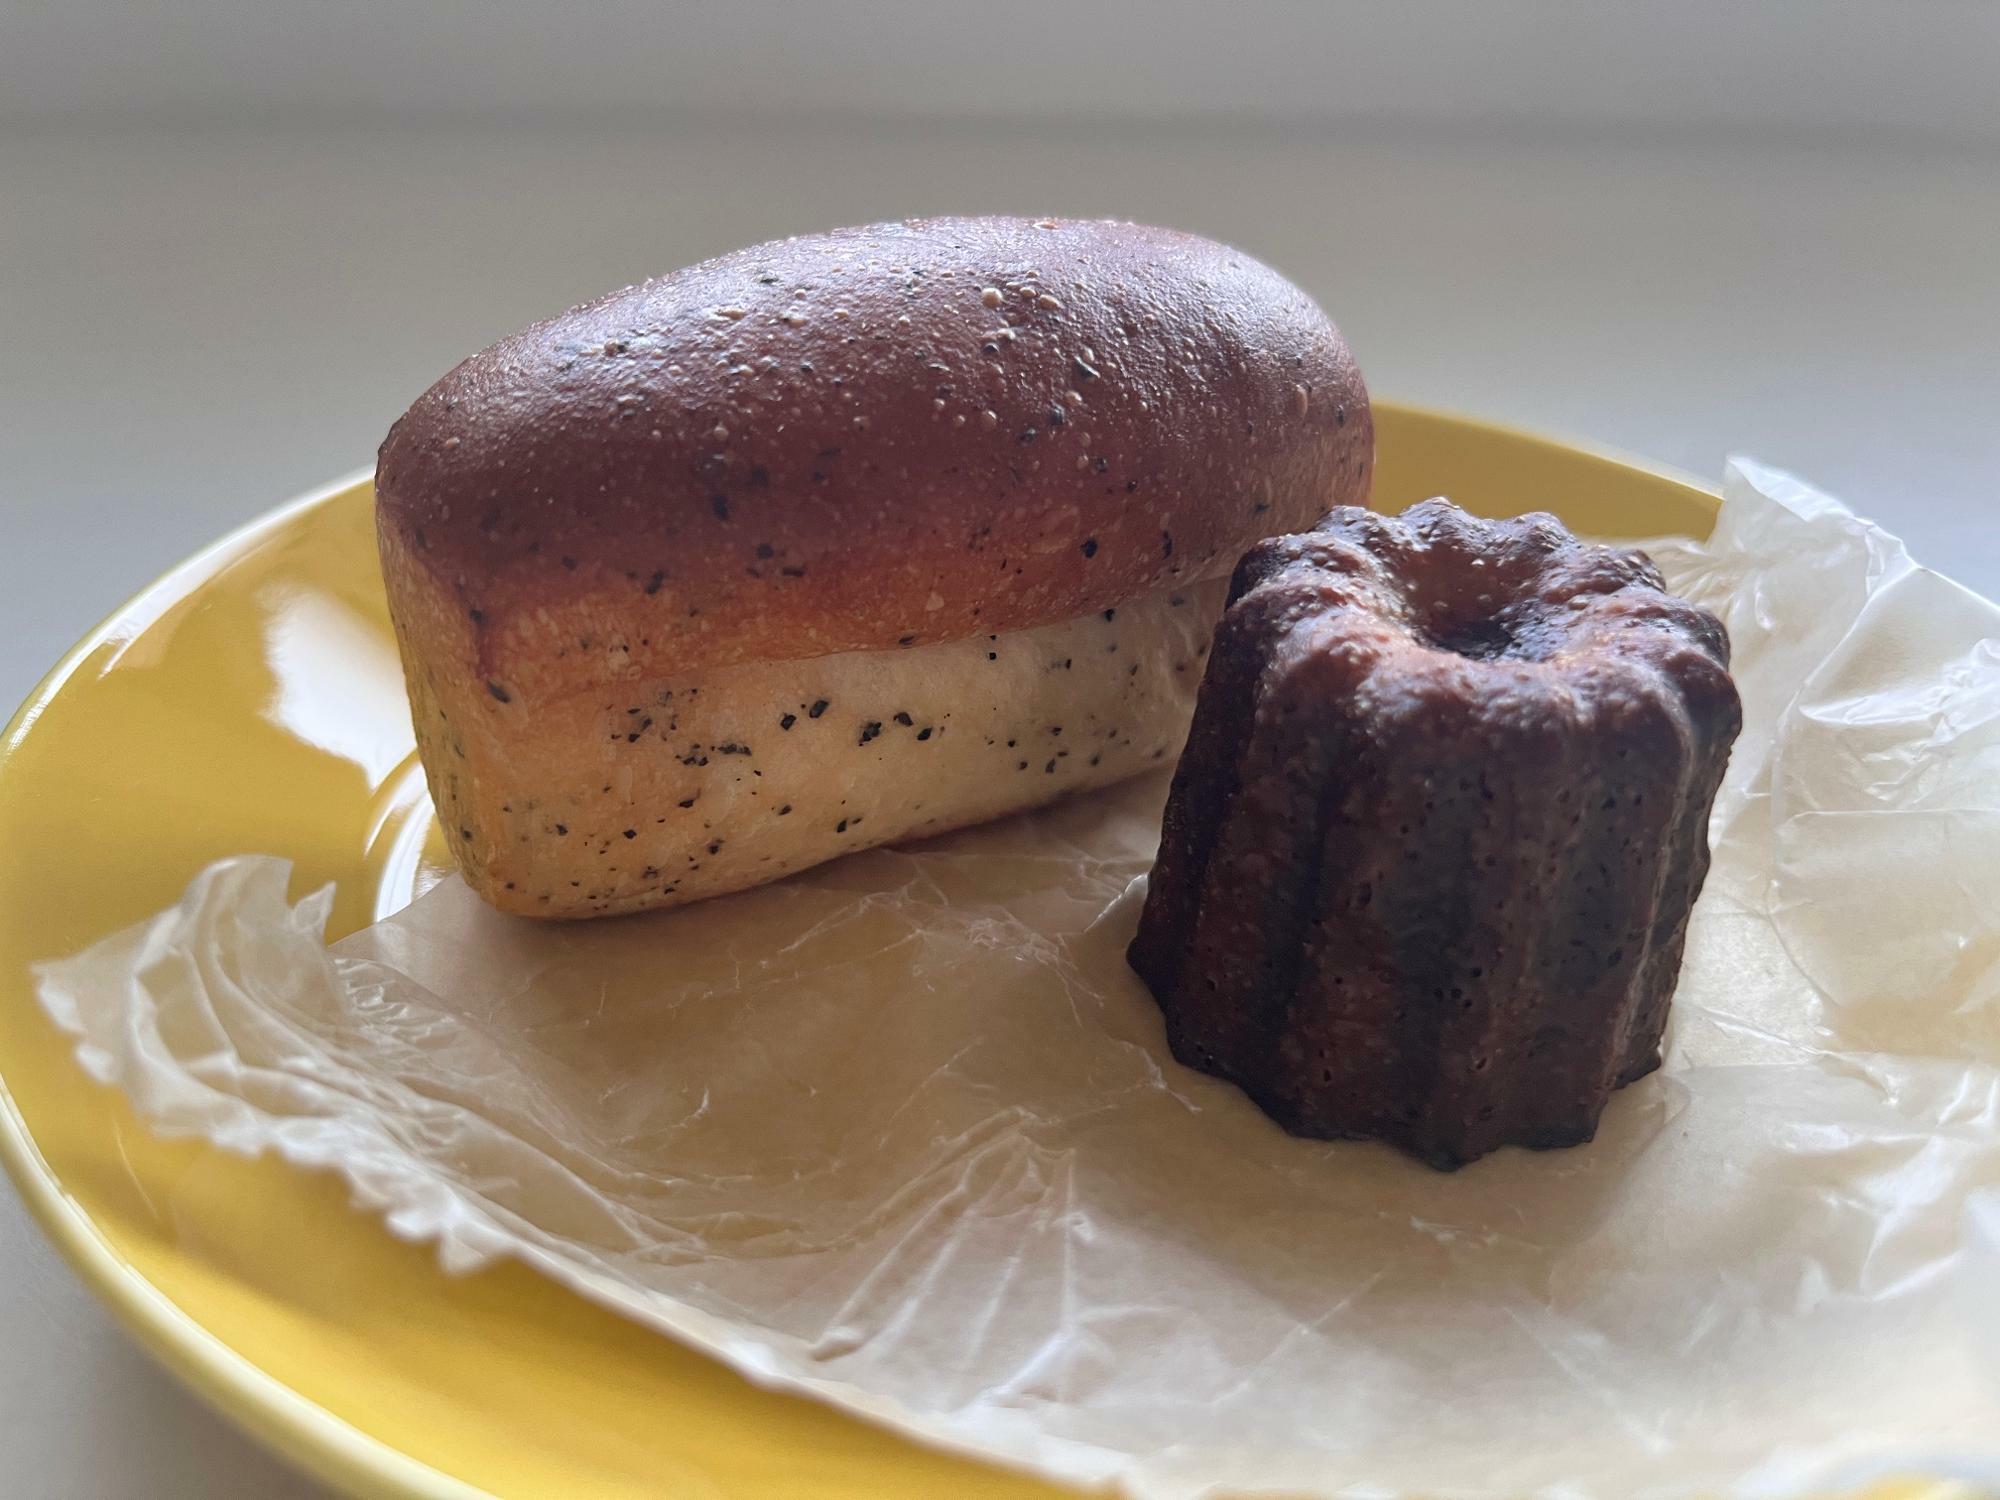 アールグレイのクリームパン(130円)とカヌレ(200円)